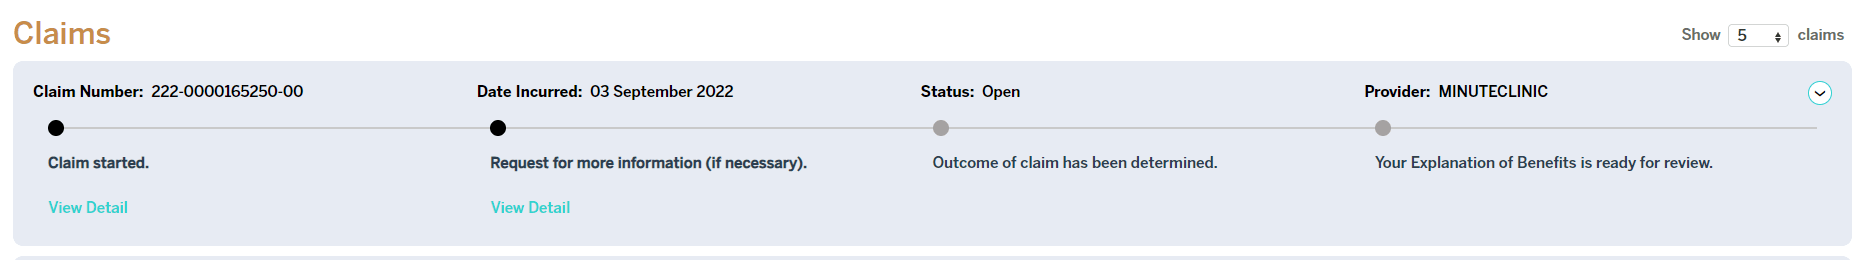 member-portal-claim-status-example